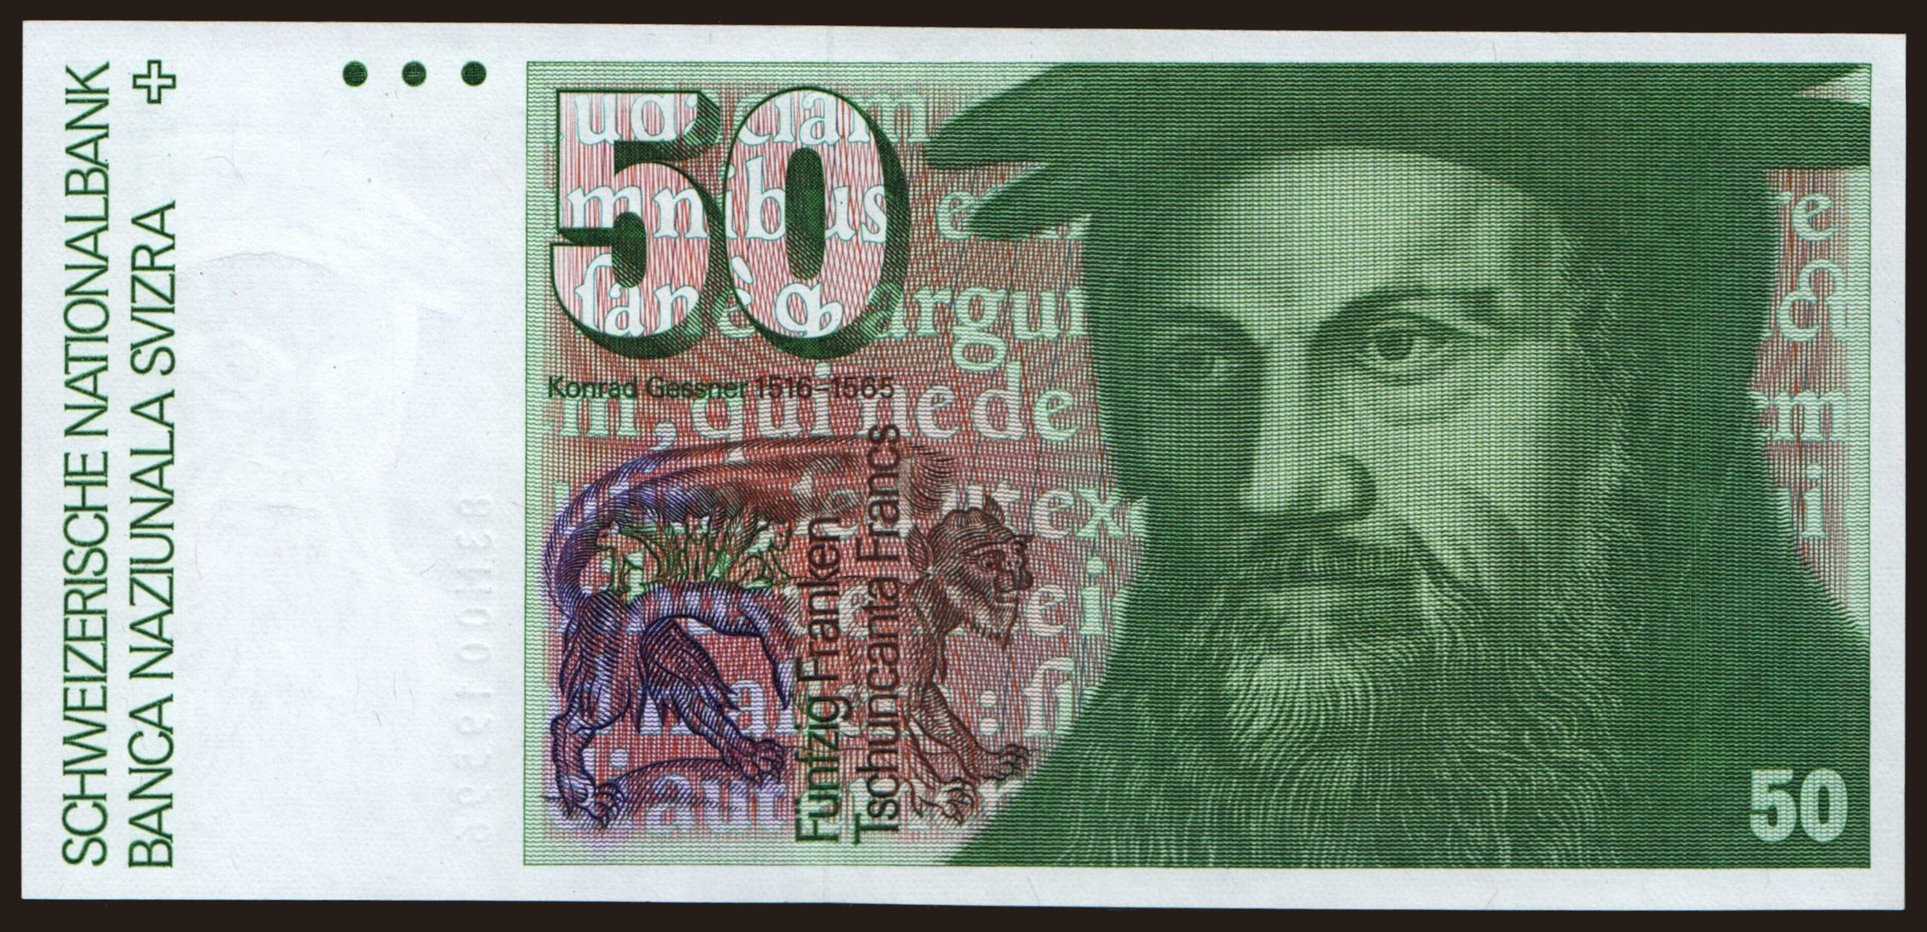 50 francs, 1983